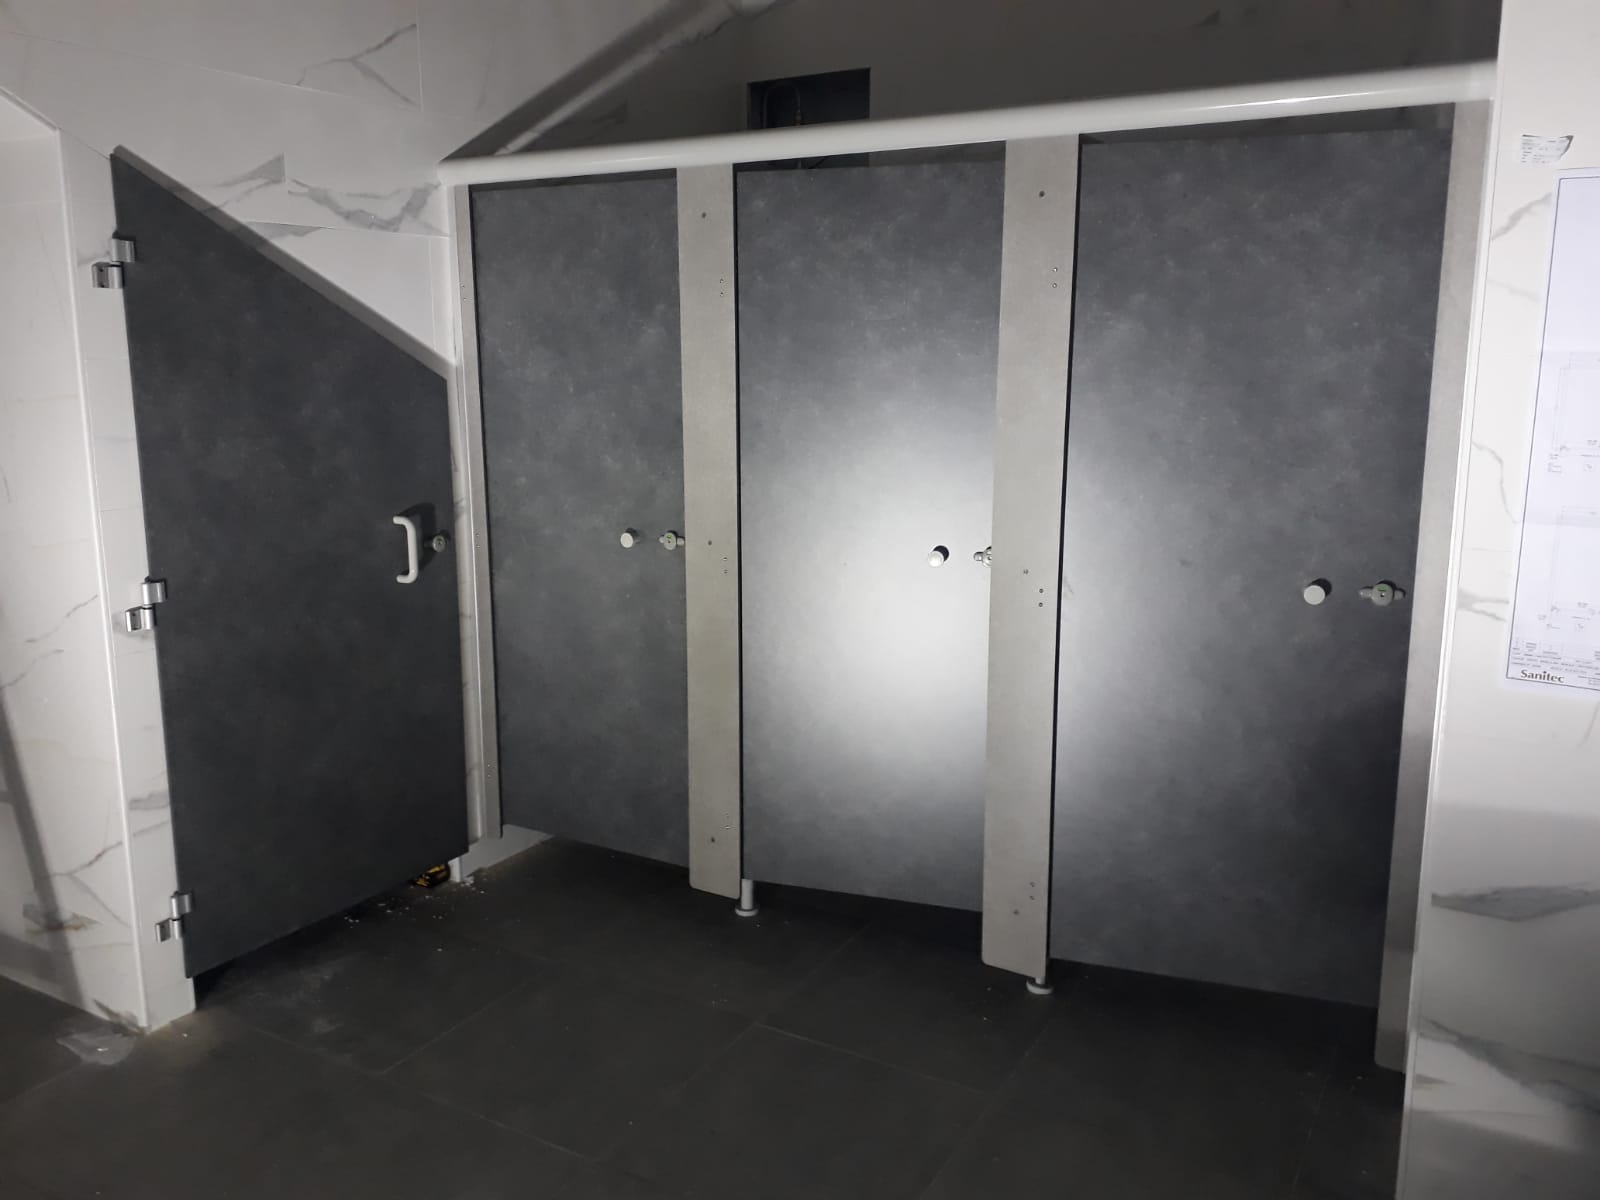 Avancement des travaux: Pose Cabines sanitaires pour toilettes